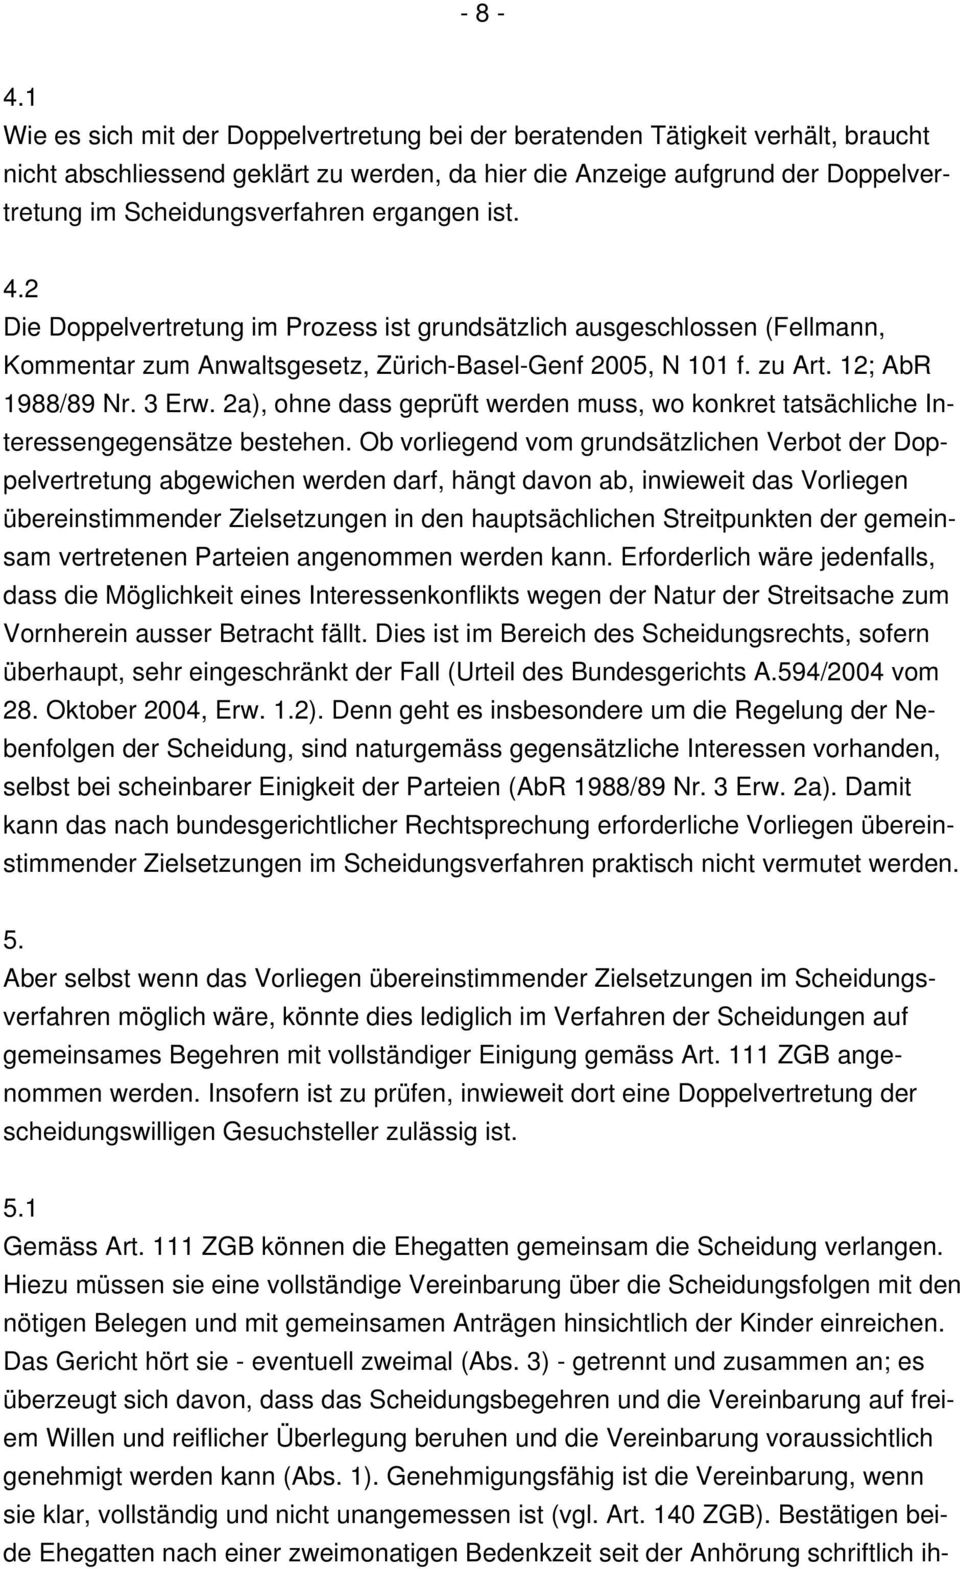 ergangen ist. 4.2 Die Doppelvertretung im Prozess ist grundsätzlich ausgeschlossen (Fellmann, Kommentar zum Anwaltsgesetz, Zürich-Basel-Genf 2005, N 101 f. zu Art. 12; AbR 1988/89 Nr. 3 Erw.